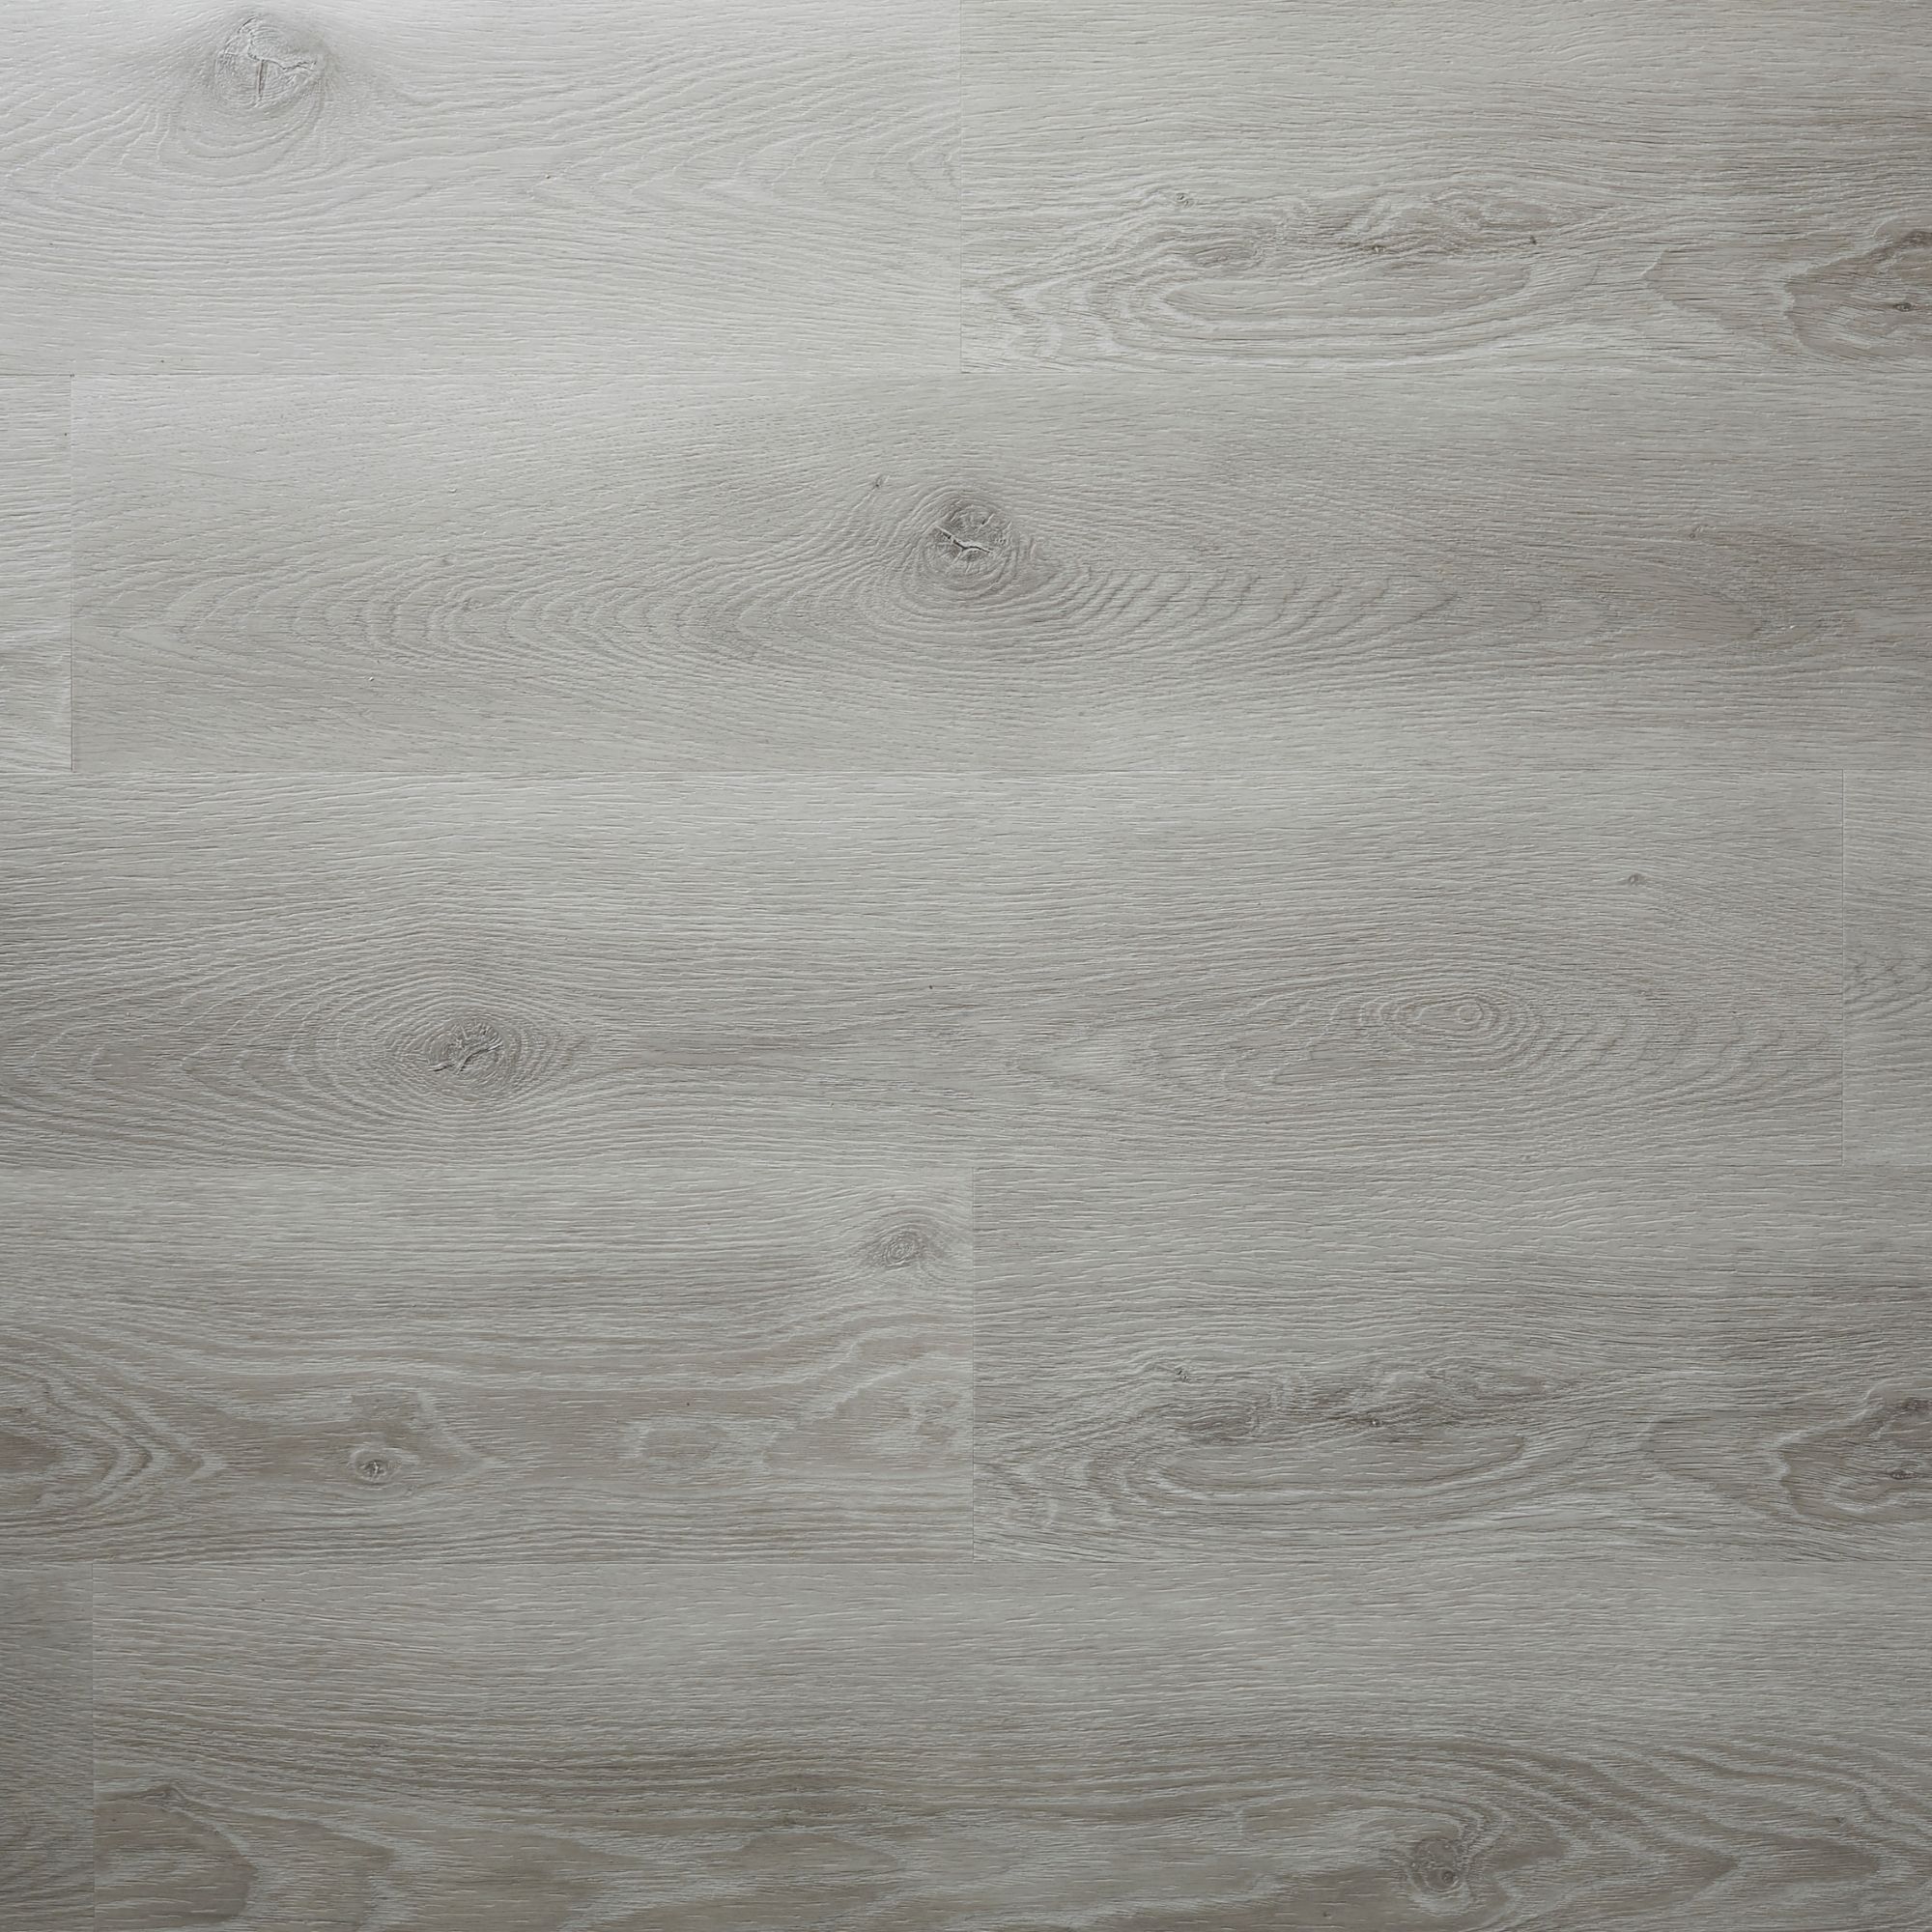 Jazy Grey Wood effect Click vinyl Flooring Sample